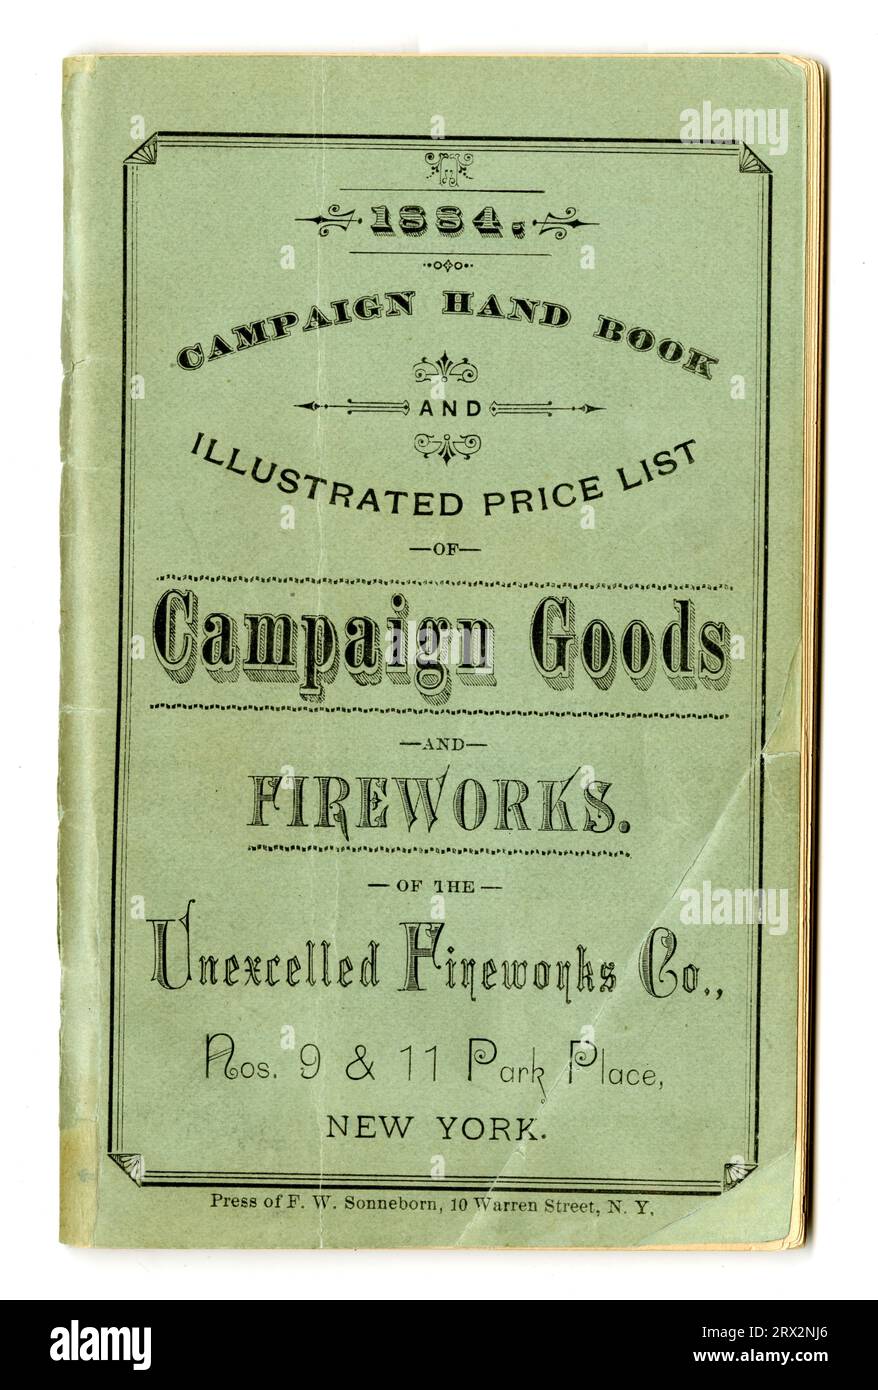 Documentazione commerciale. Manuale della campagna e listino prezzi illustrato di articoli e fuochi d'artificio della campagna, 1884. PL*227739.1884.D14. Foto Stock